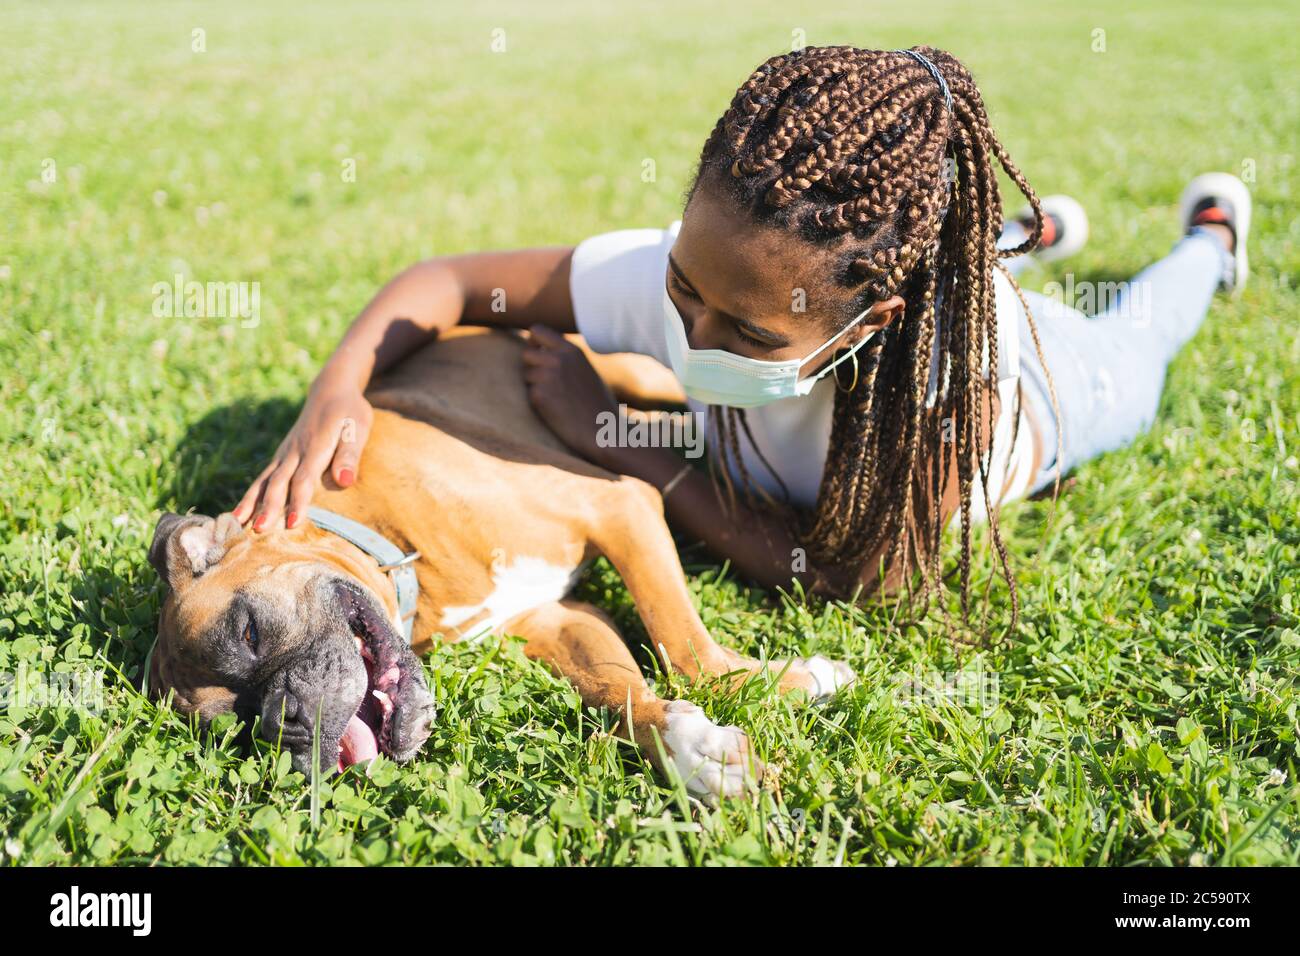 Donna africana con trecce e maschera protettiva stesa sull'erba e stropica un cane pugile in una giornata di sole Foto Stock